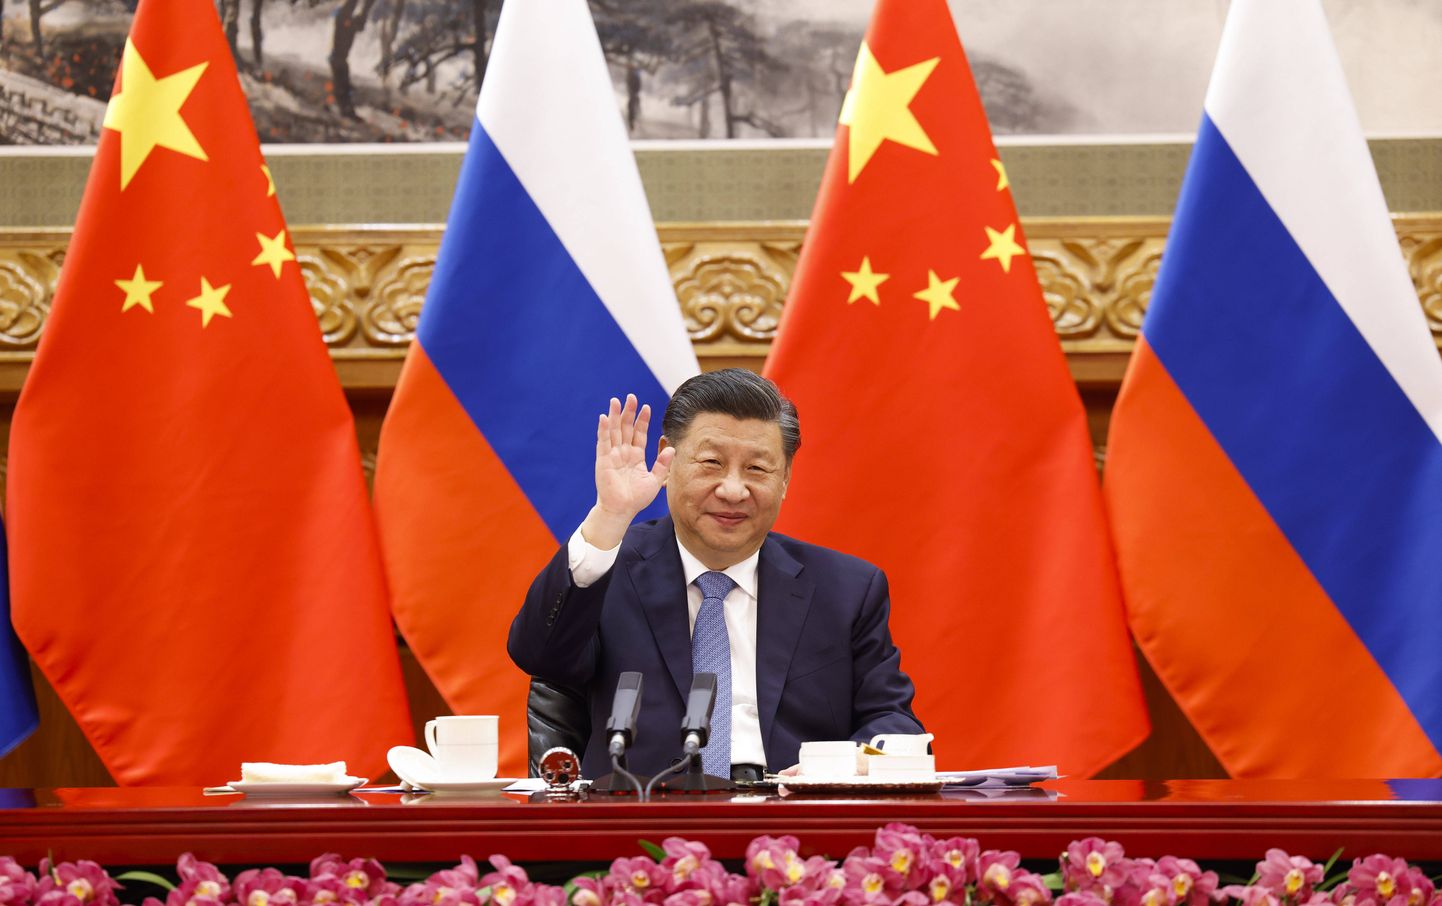 Hiina president Xi Jinping virtuaalsel kohtumisel Venemaa presidendi Vladimir Putiniga 15. detsembril.